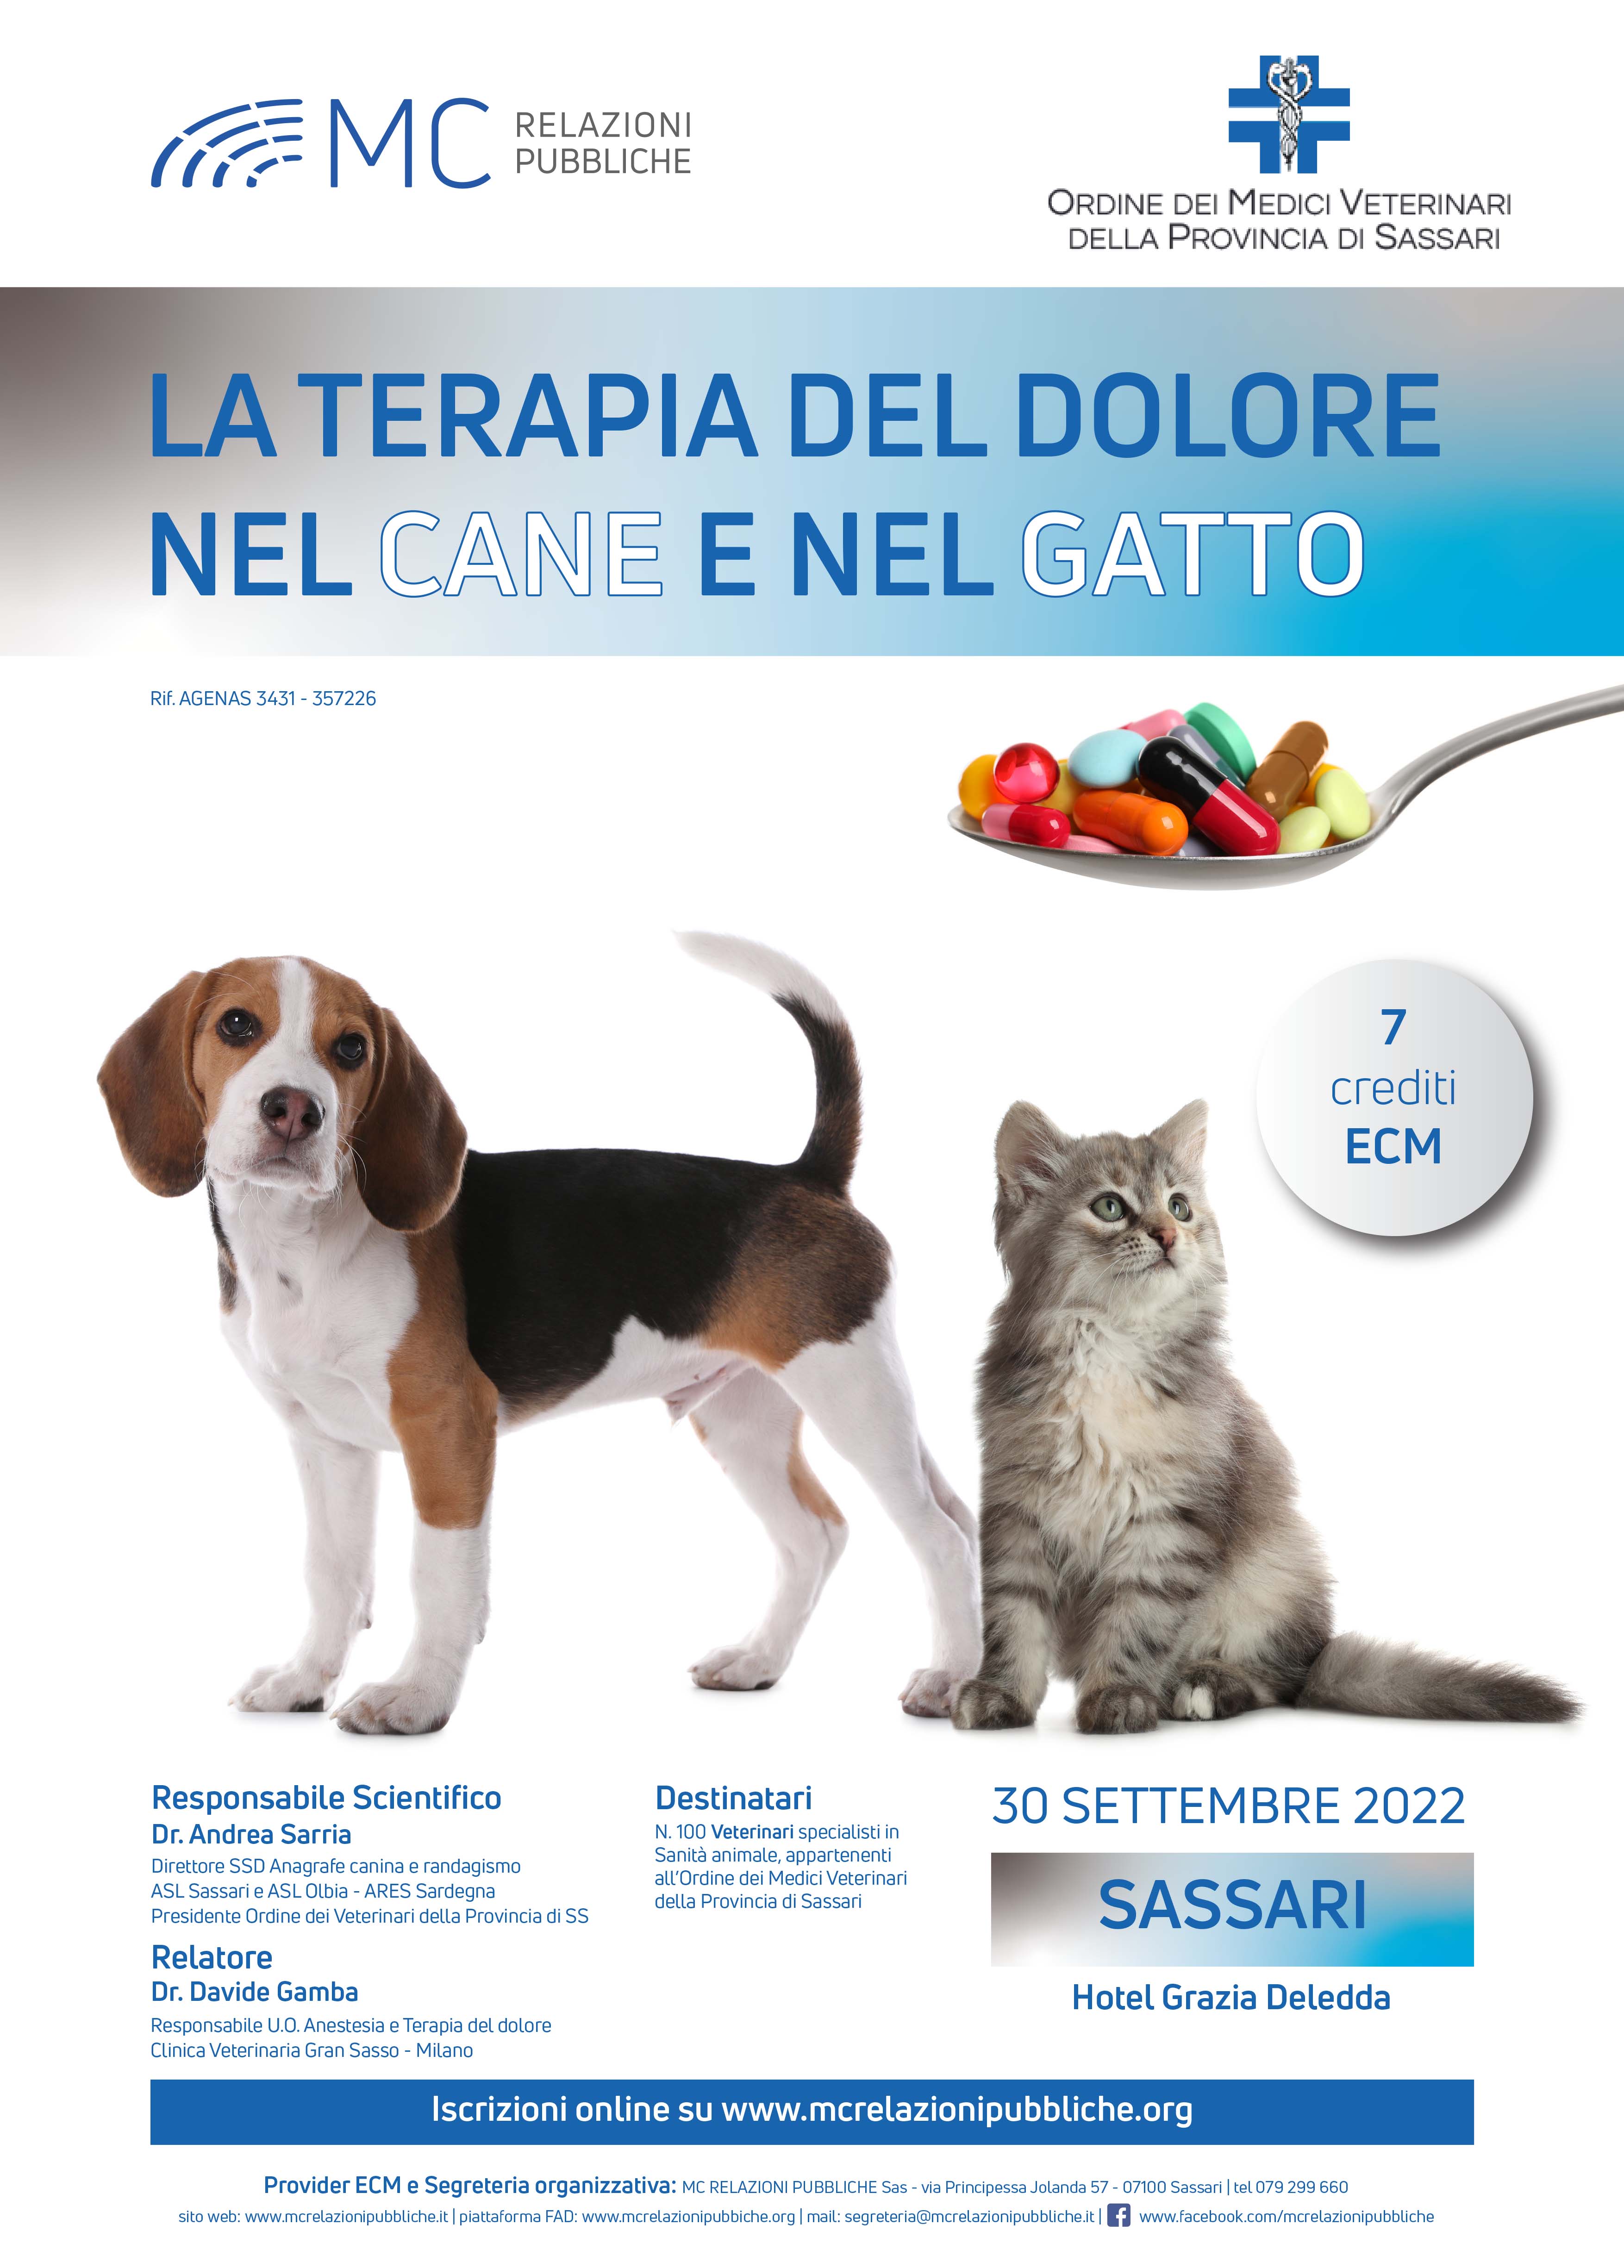 La terapia del dolore nel cane e nel gatto - 30 settembre 2022